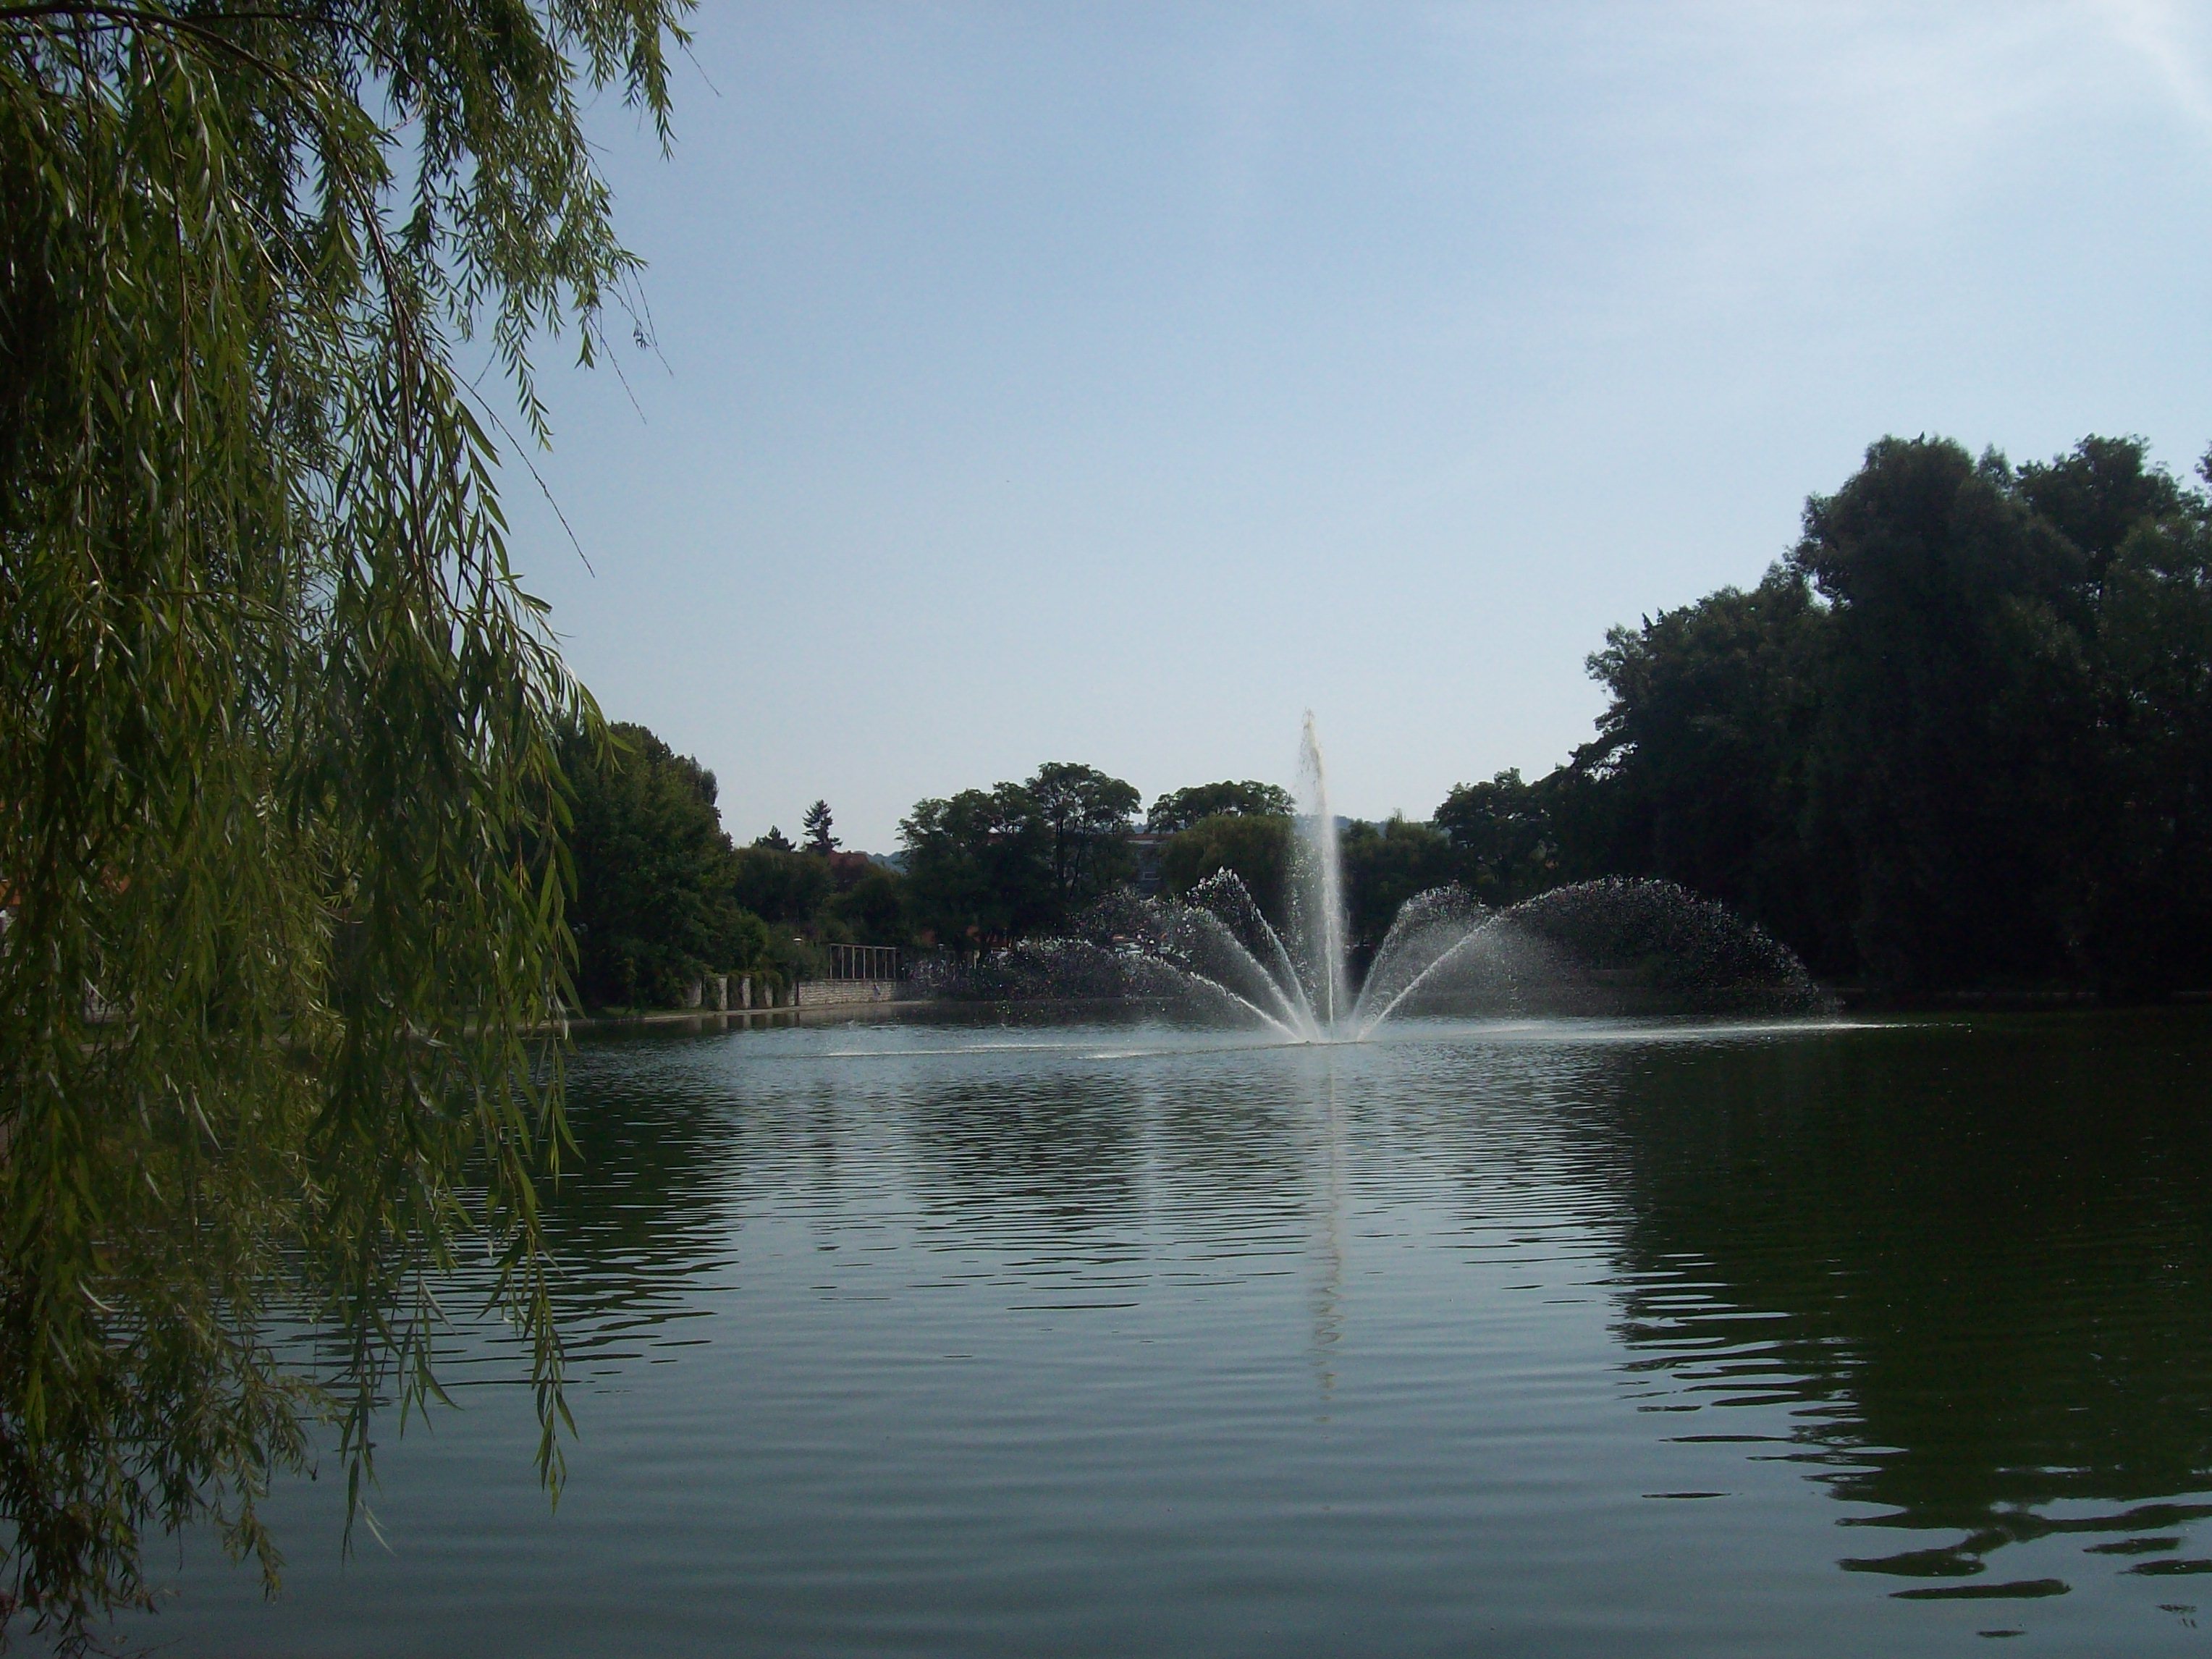 Vor der Schule befindet sich dieser See. Traditionell springen die Schülerinnen am letzten Schultag vor den Sommerferien in voller Montur hinein:-)